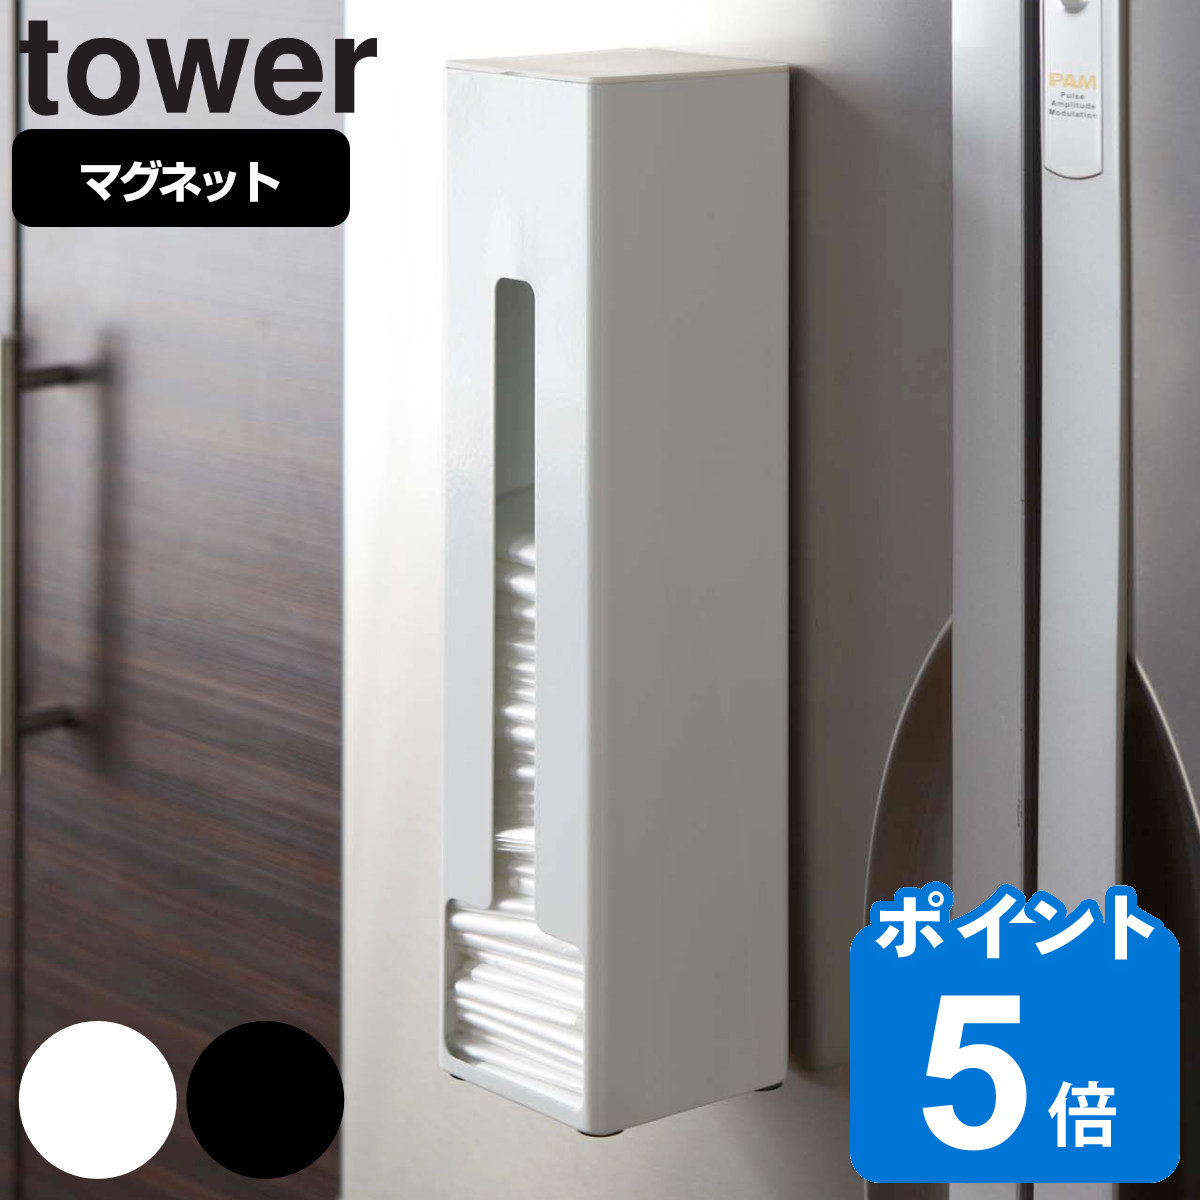 tower ポリ袋ストッカー タワー